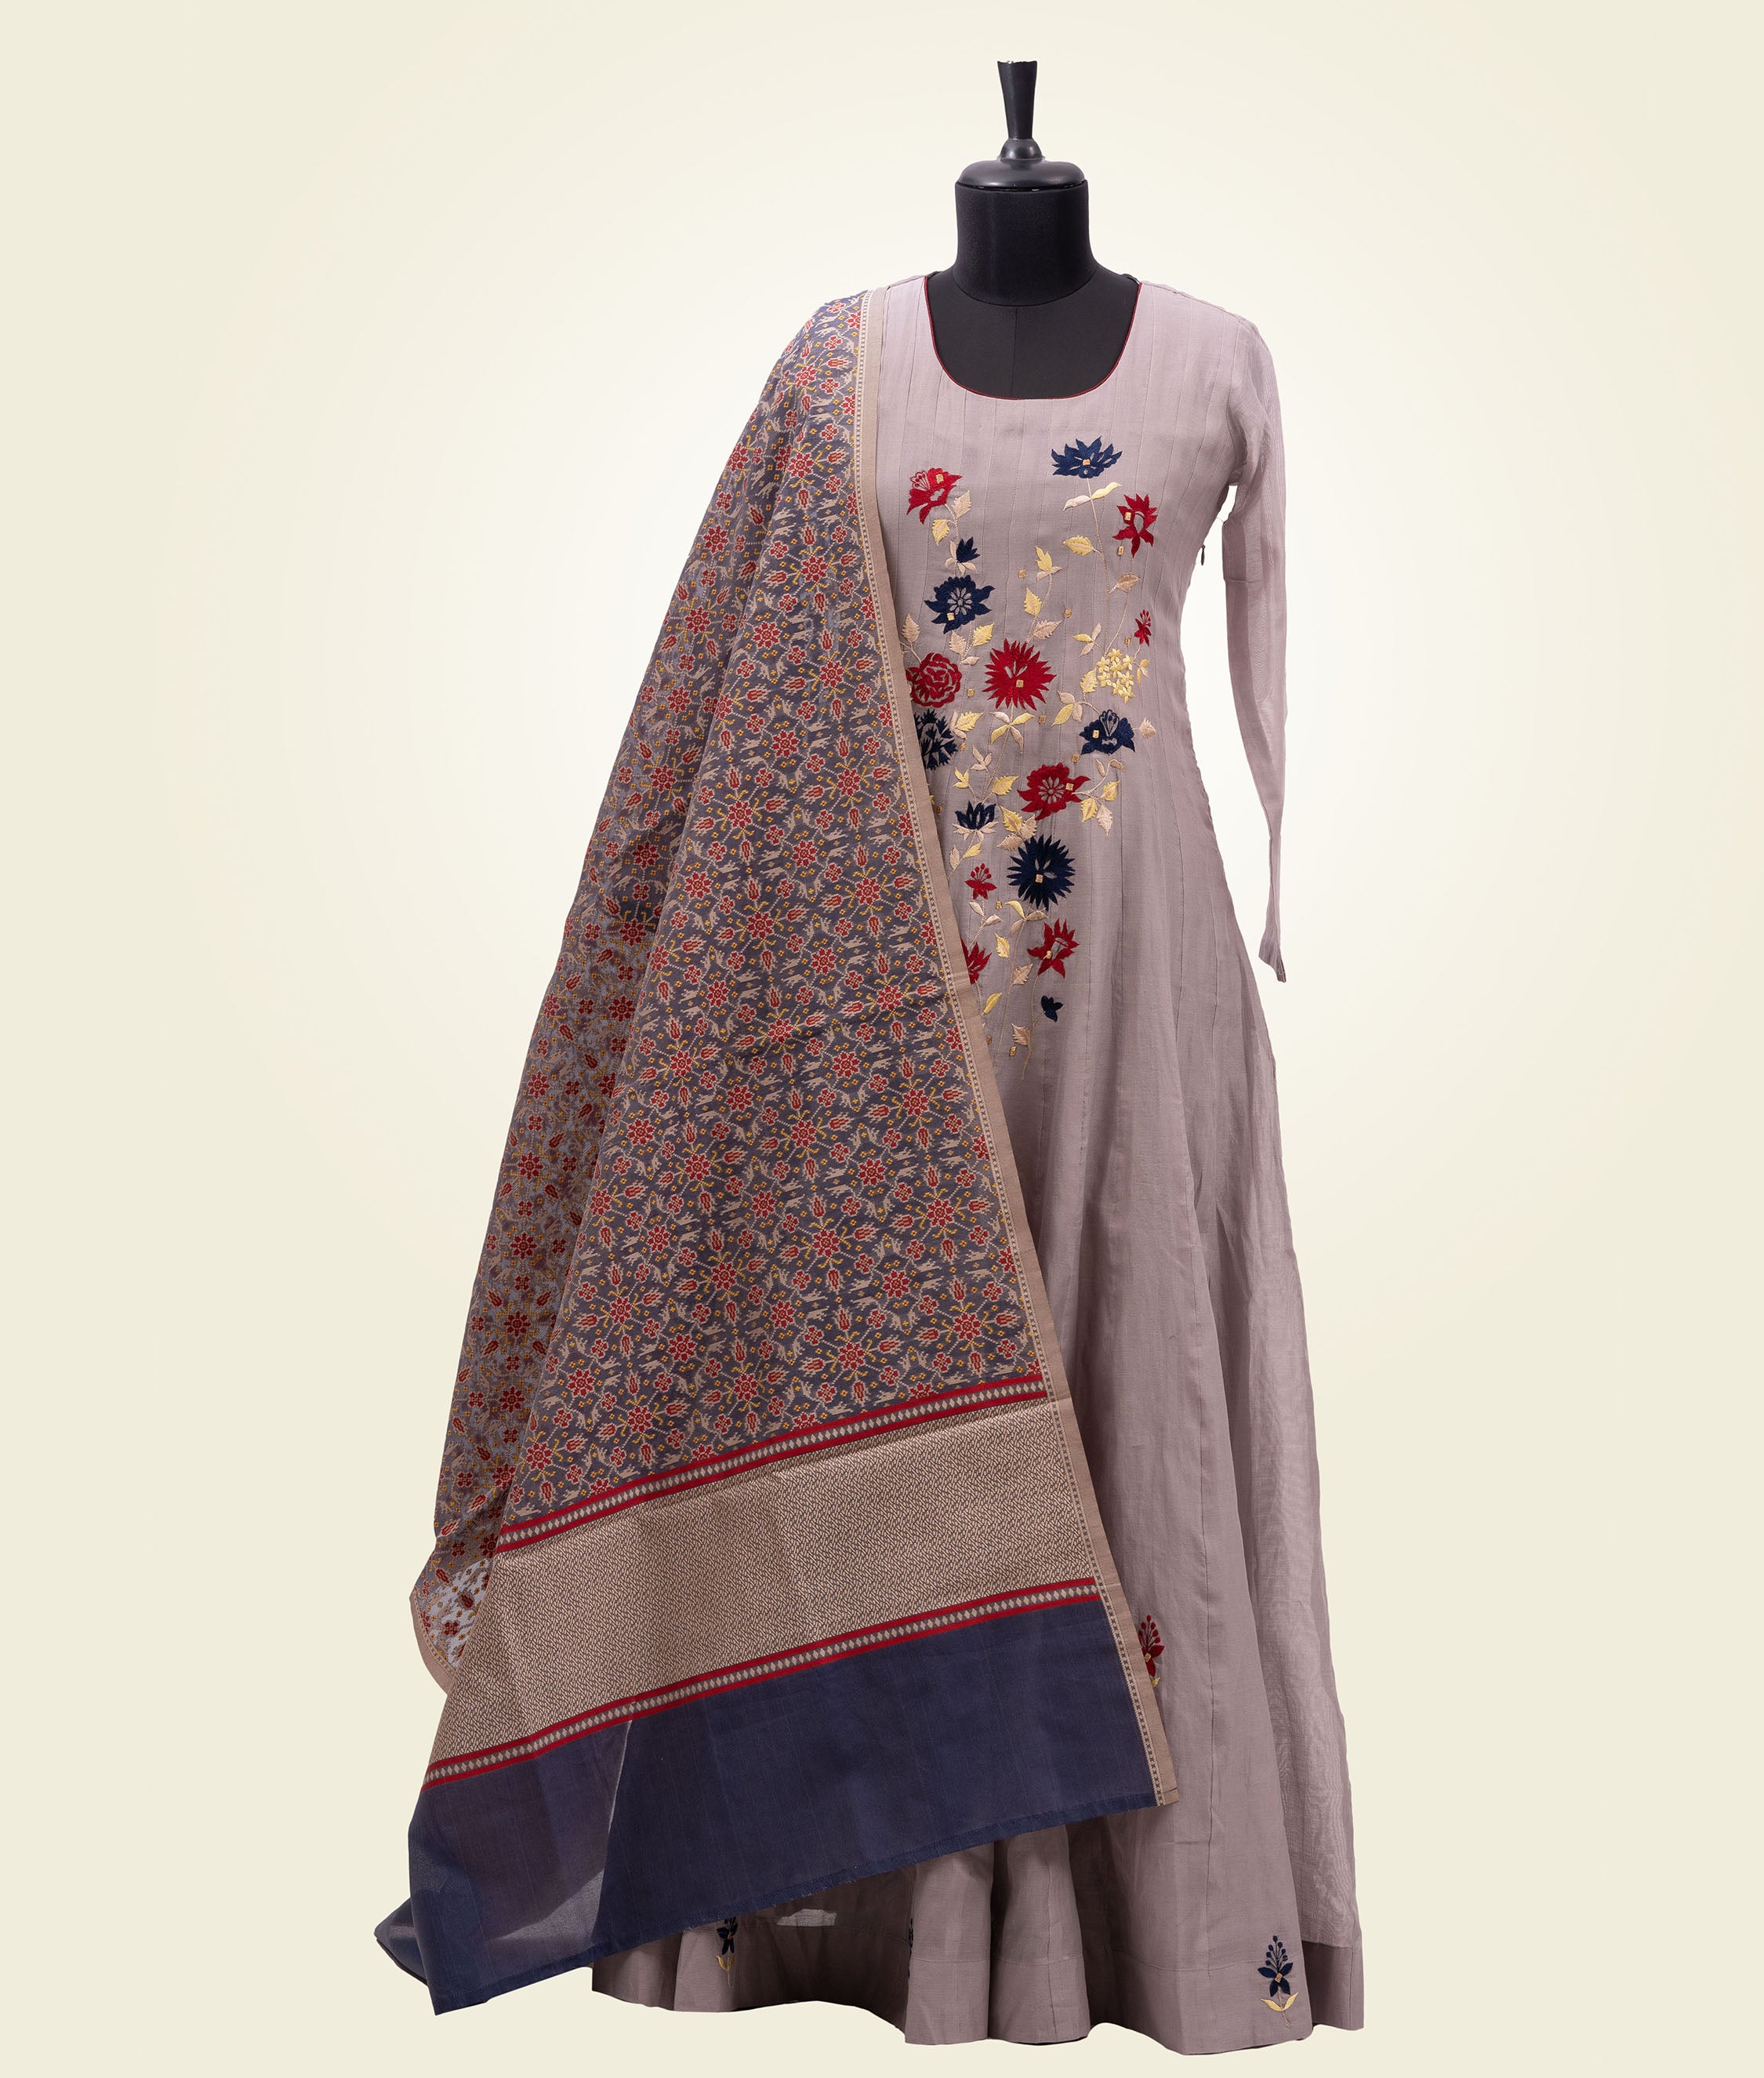 Light Grey Salwar Kameez With Embroidery And Banarasi Kora Dupatta - kaystore.in